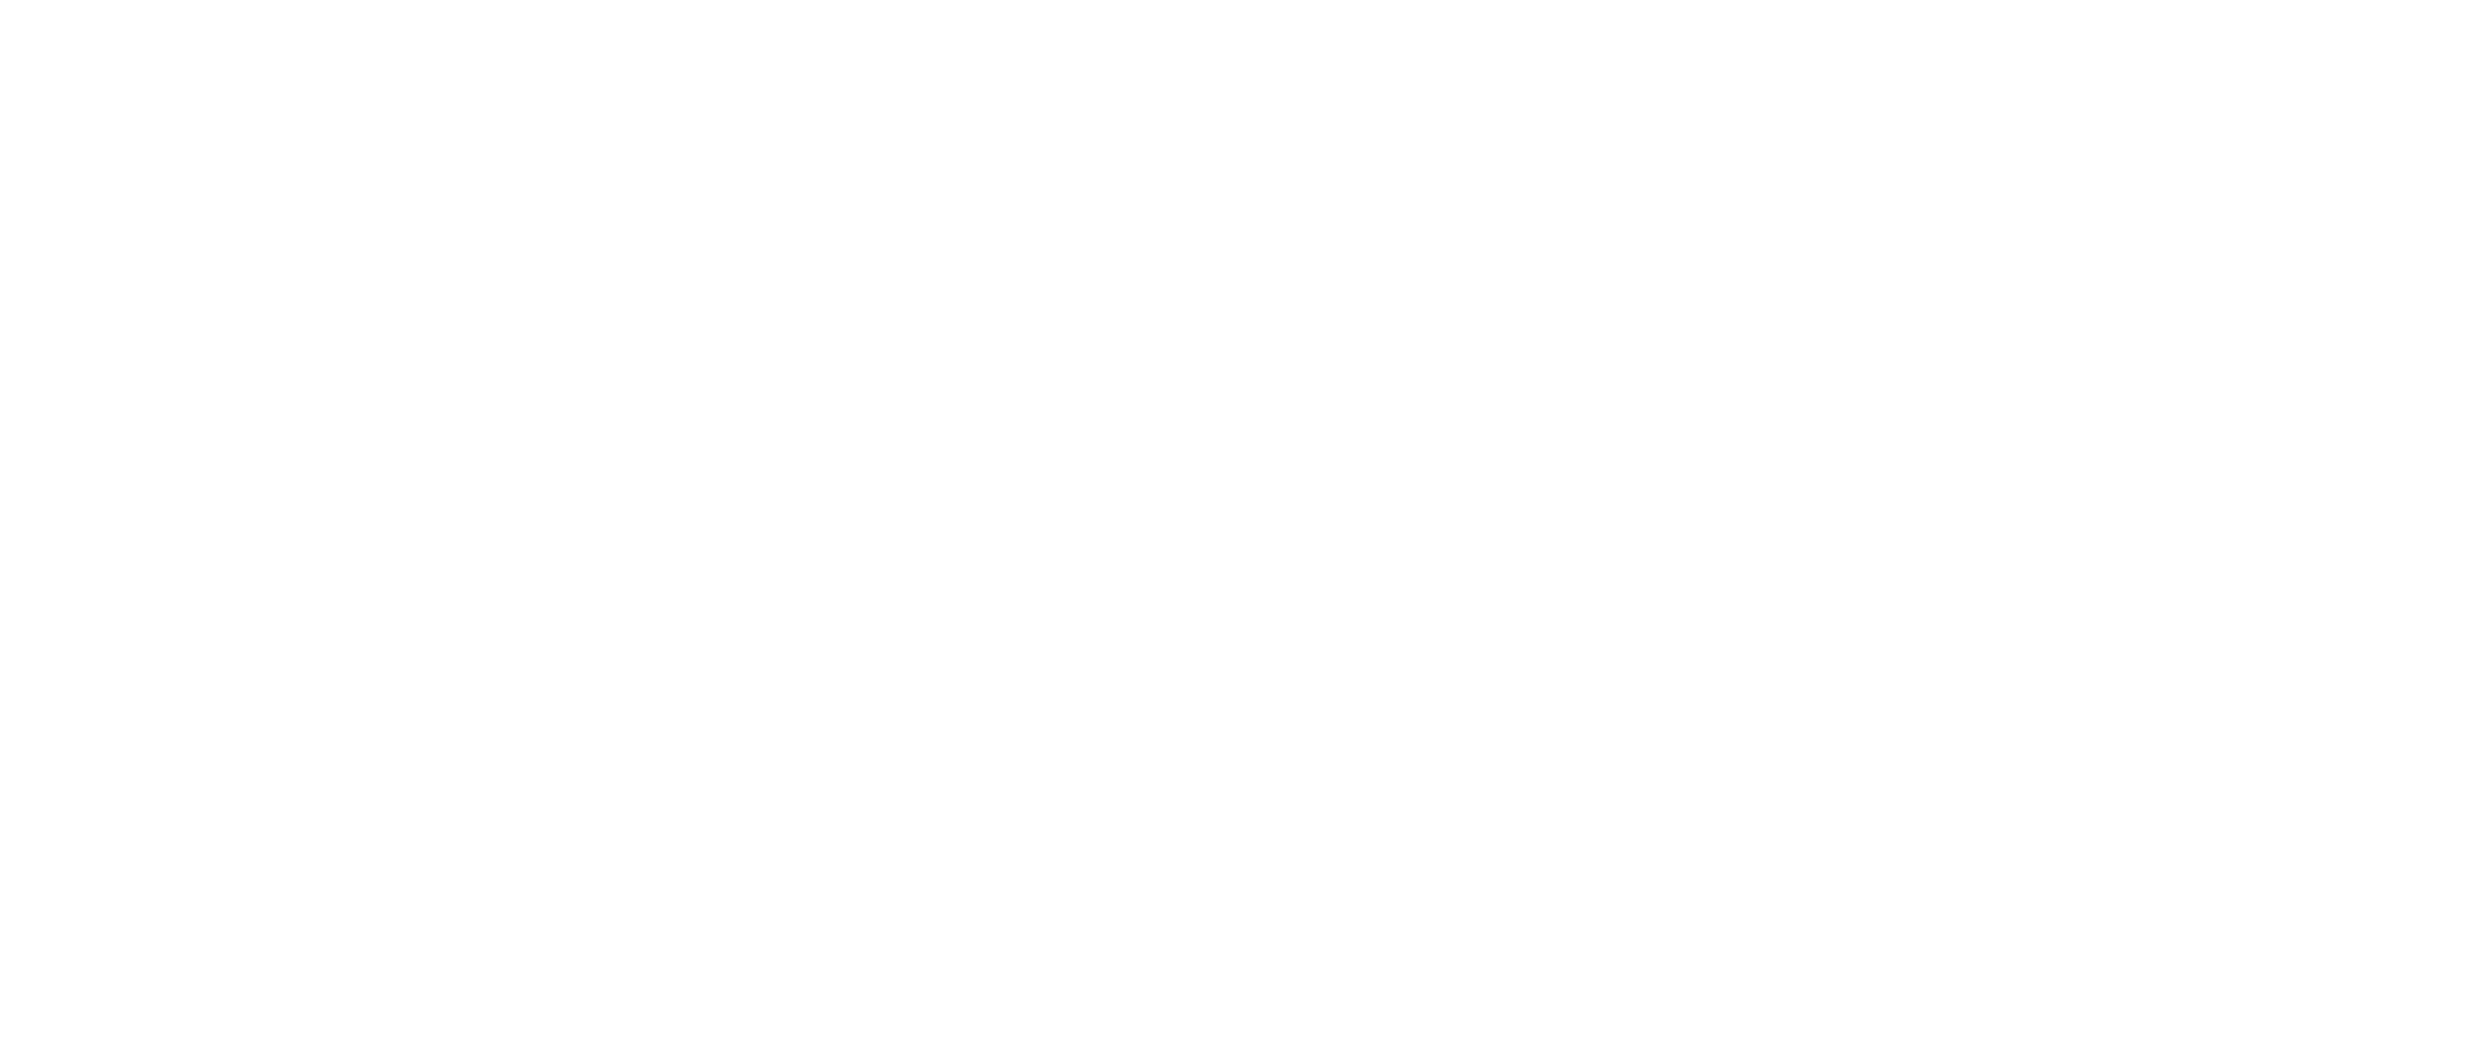 Logomarca Gerdau O futuro se molda horizontal